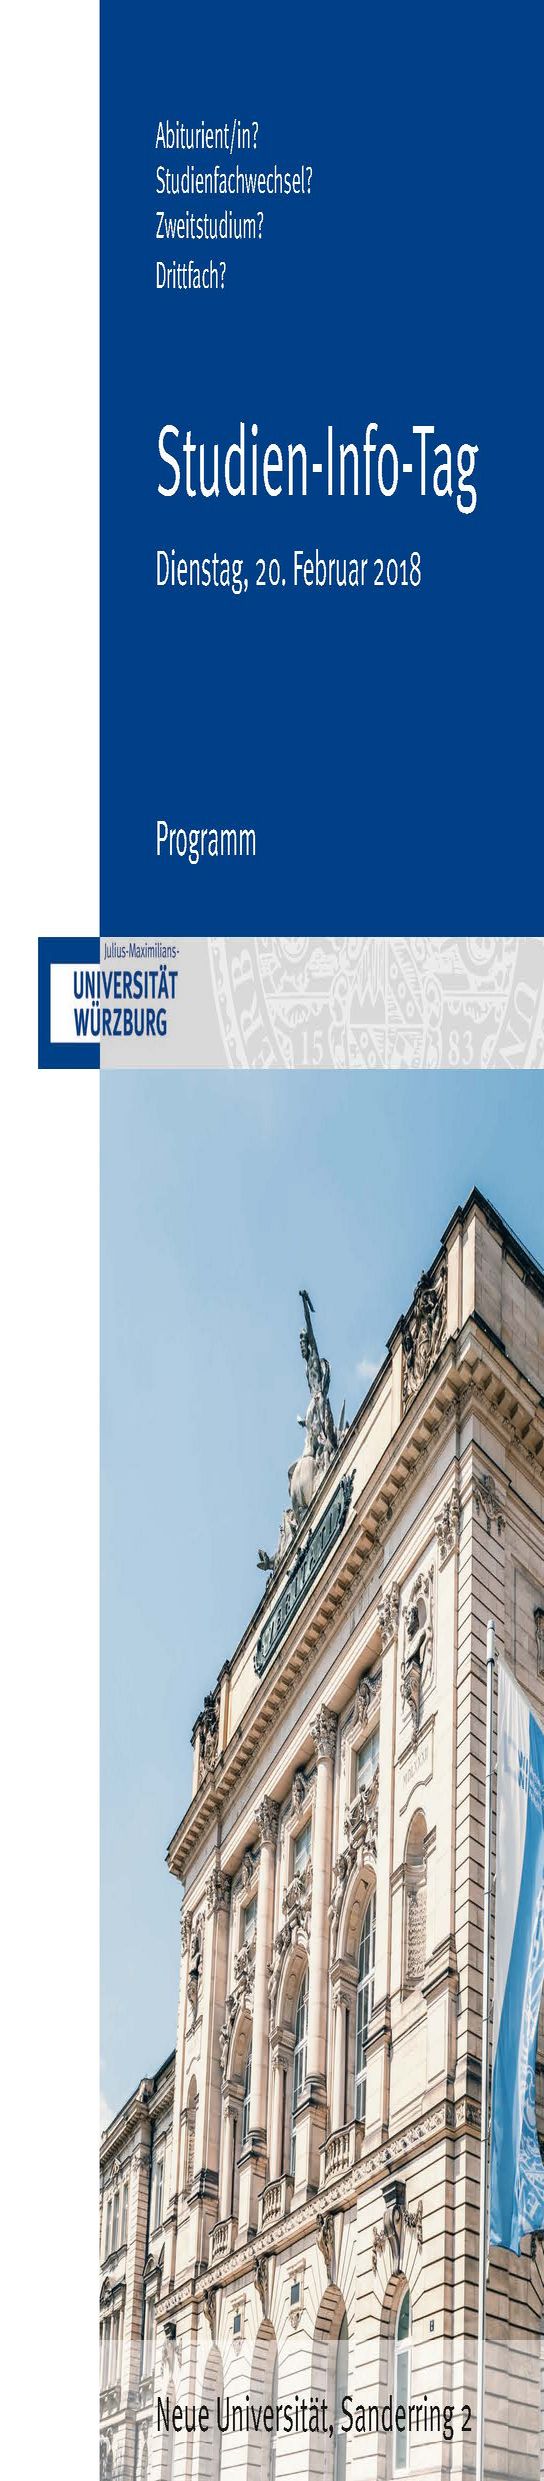 Studien-Info-Tag der Universität Würzburg